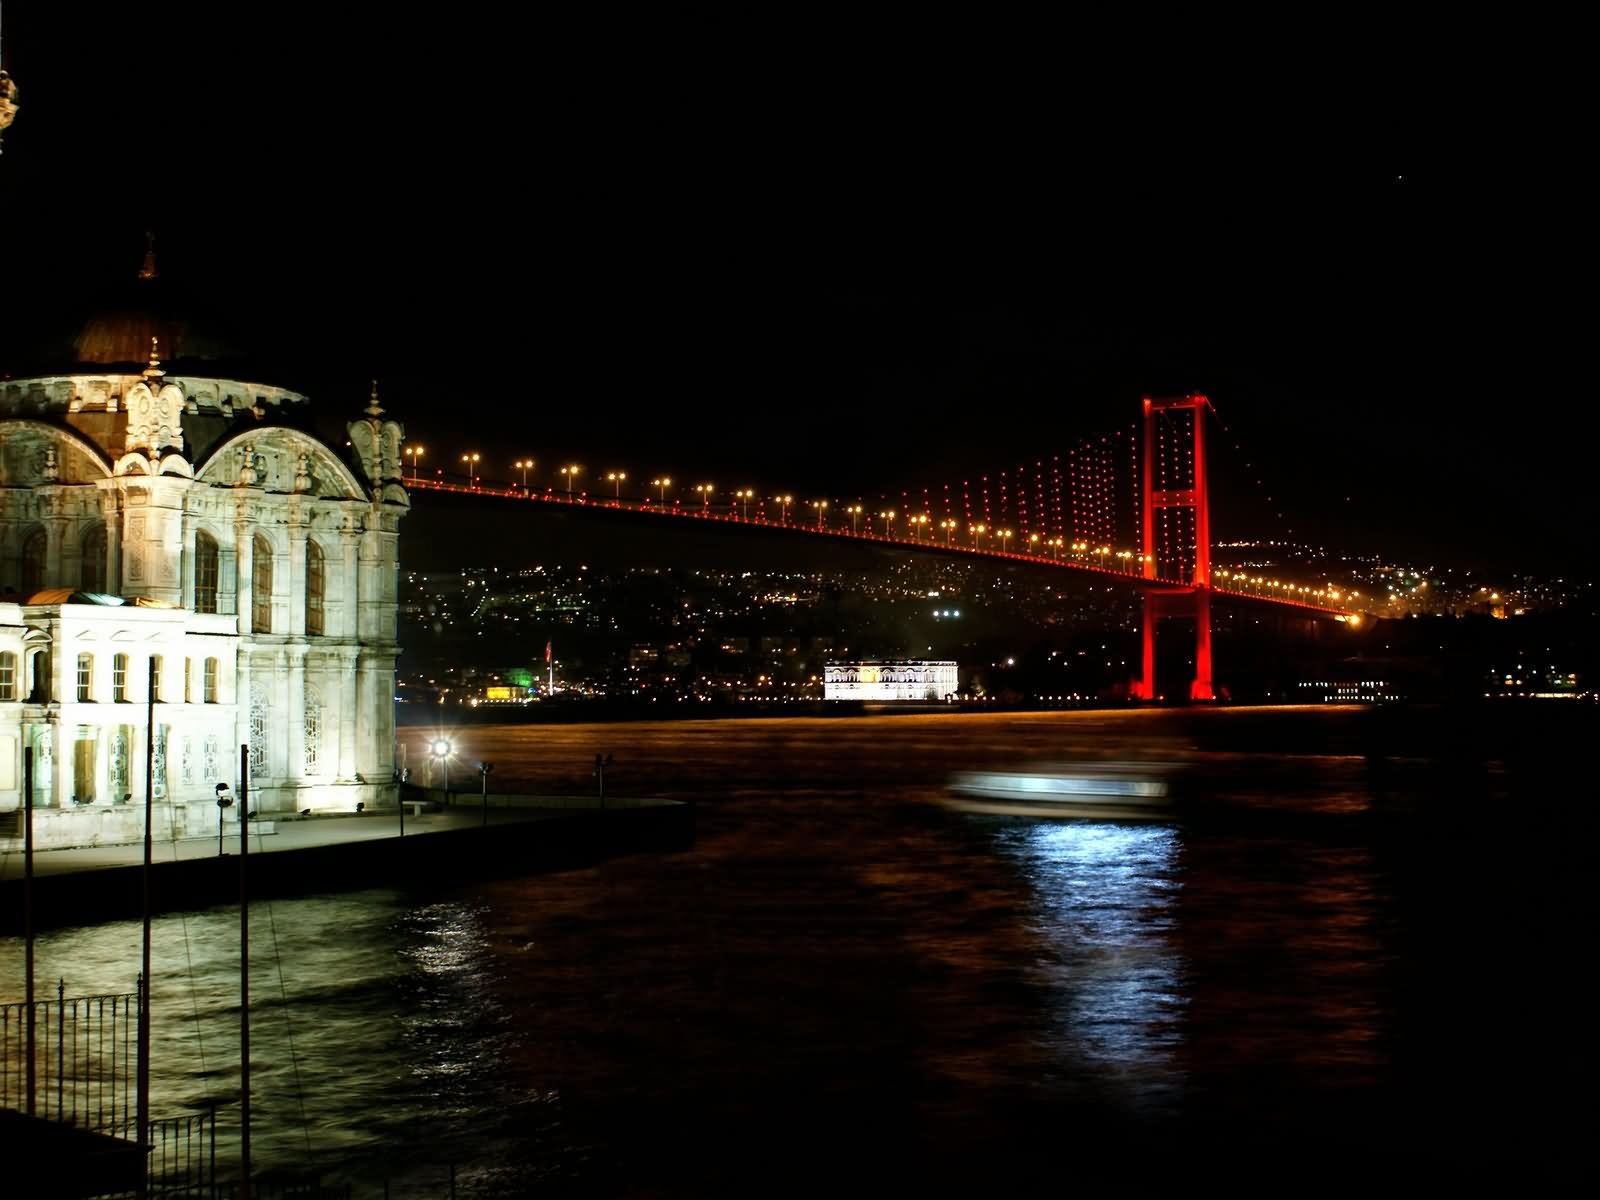 Night Picture Of The Bosphorus Bridge, Istanbul